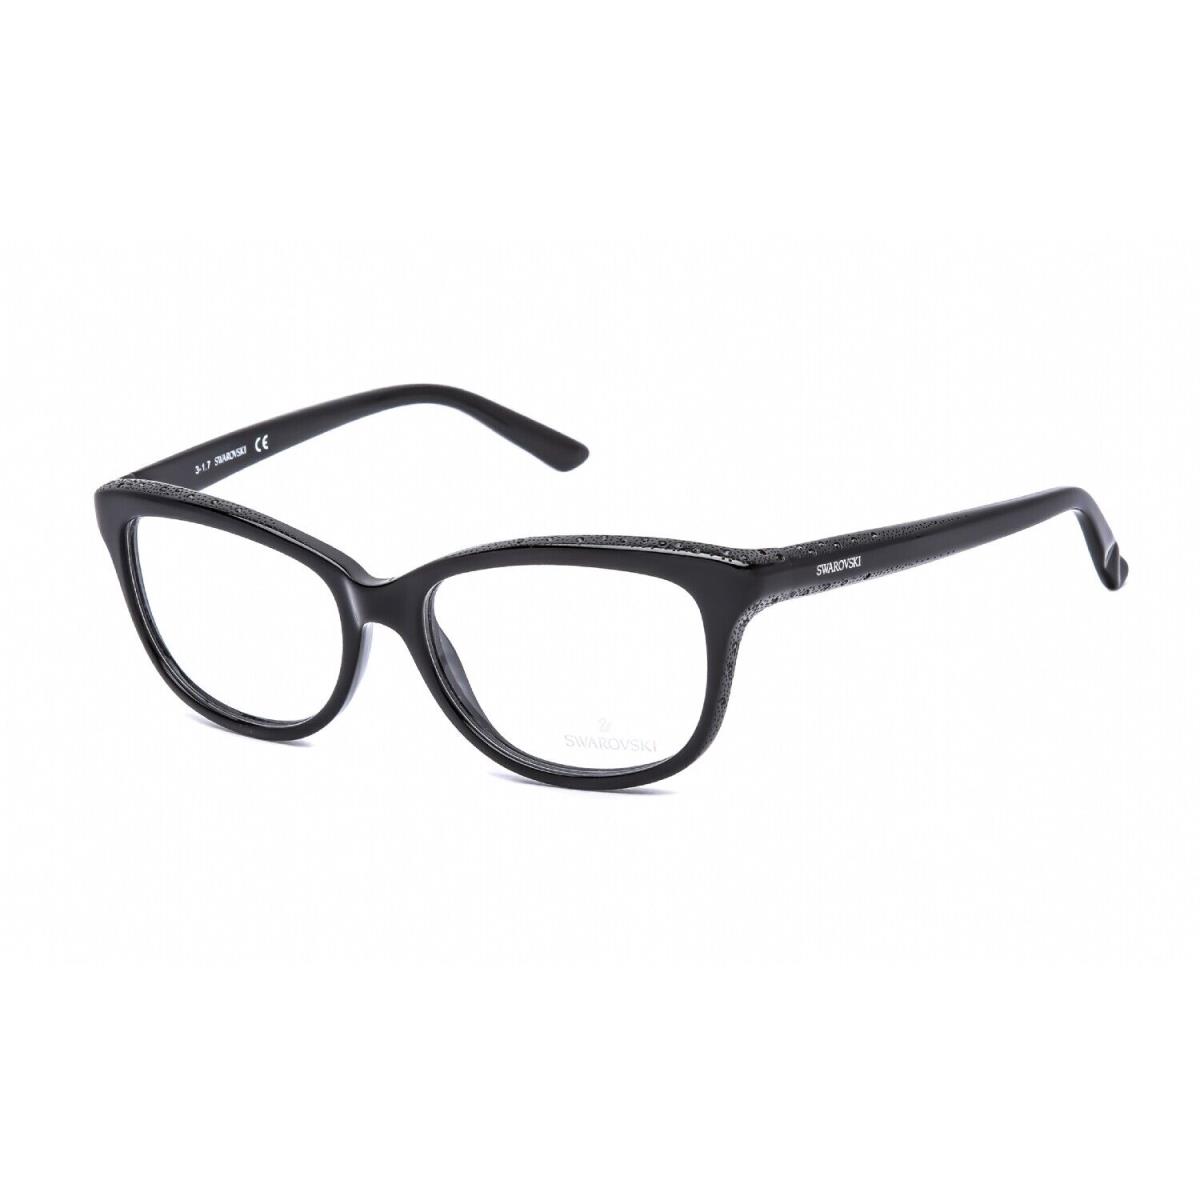 Swarovski SK 5100 001 Eyeglasses Shiny Black Frame 54mm